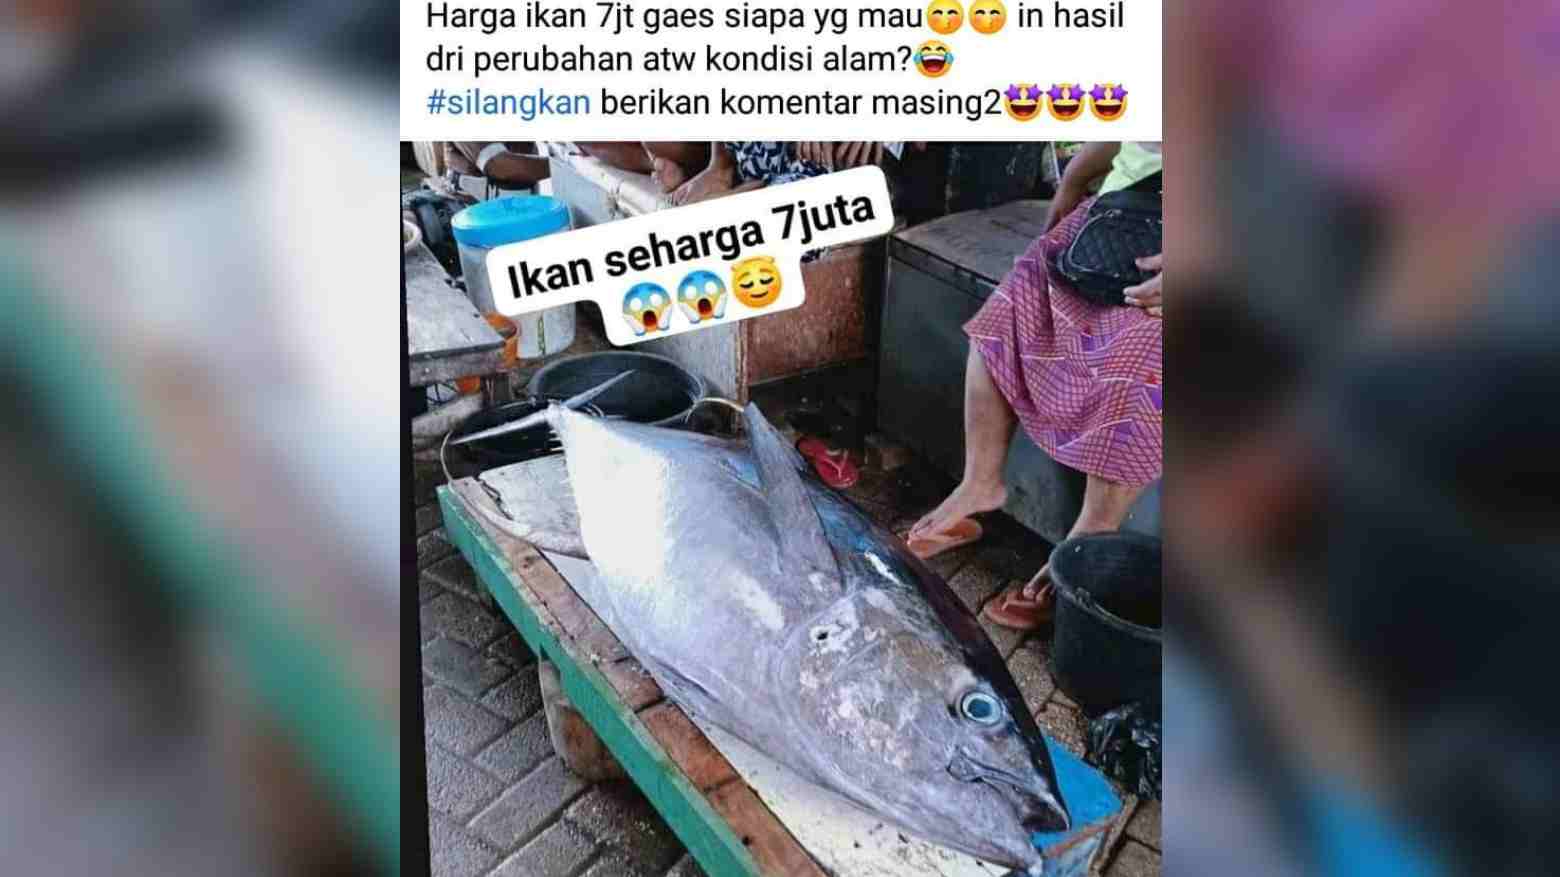 Harga Ikan di Wakatobi Capai Rp 7 Juta Per Ekor, Viral di Media Sosial